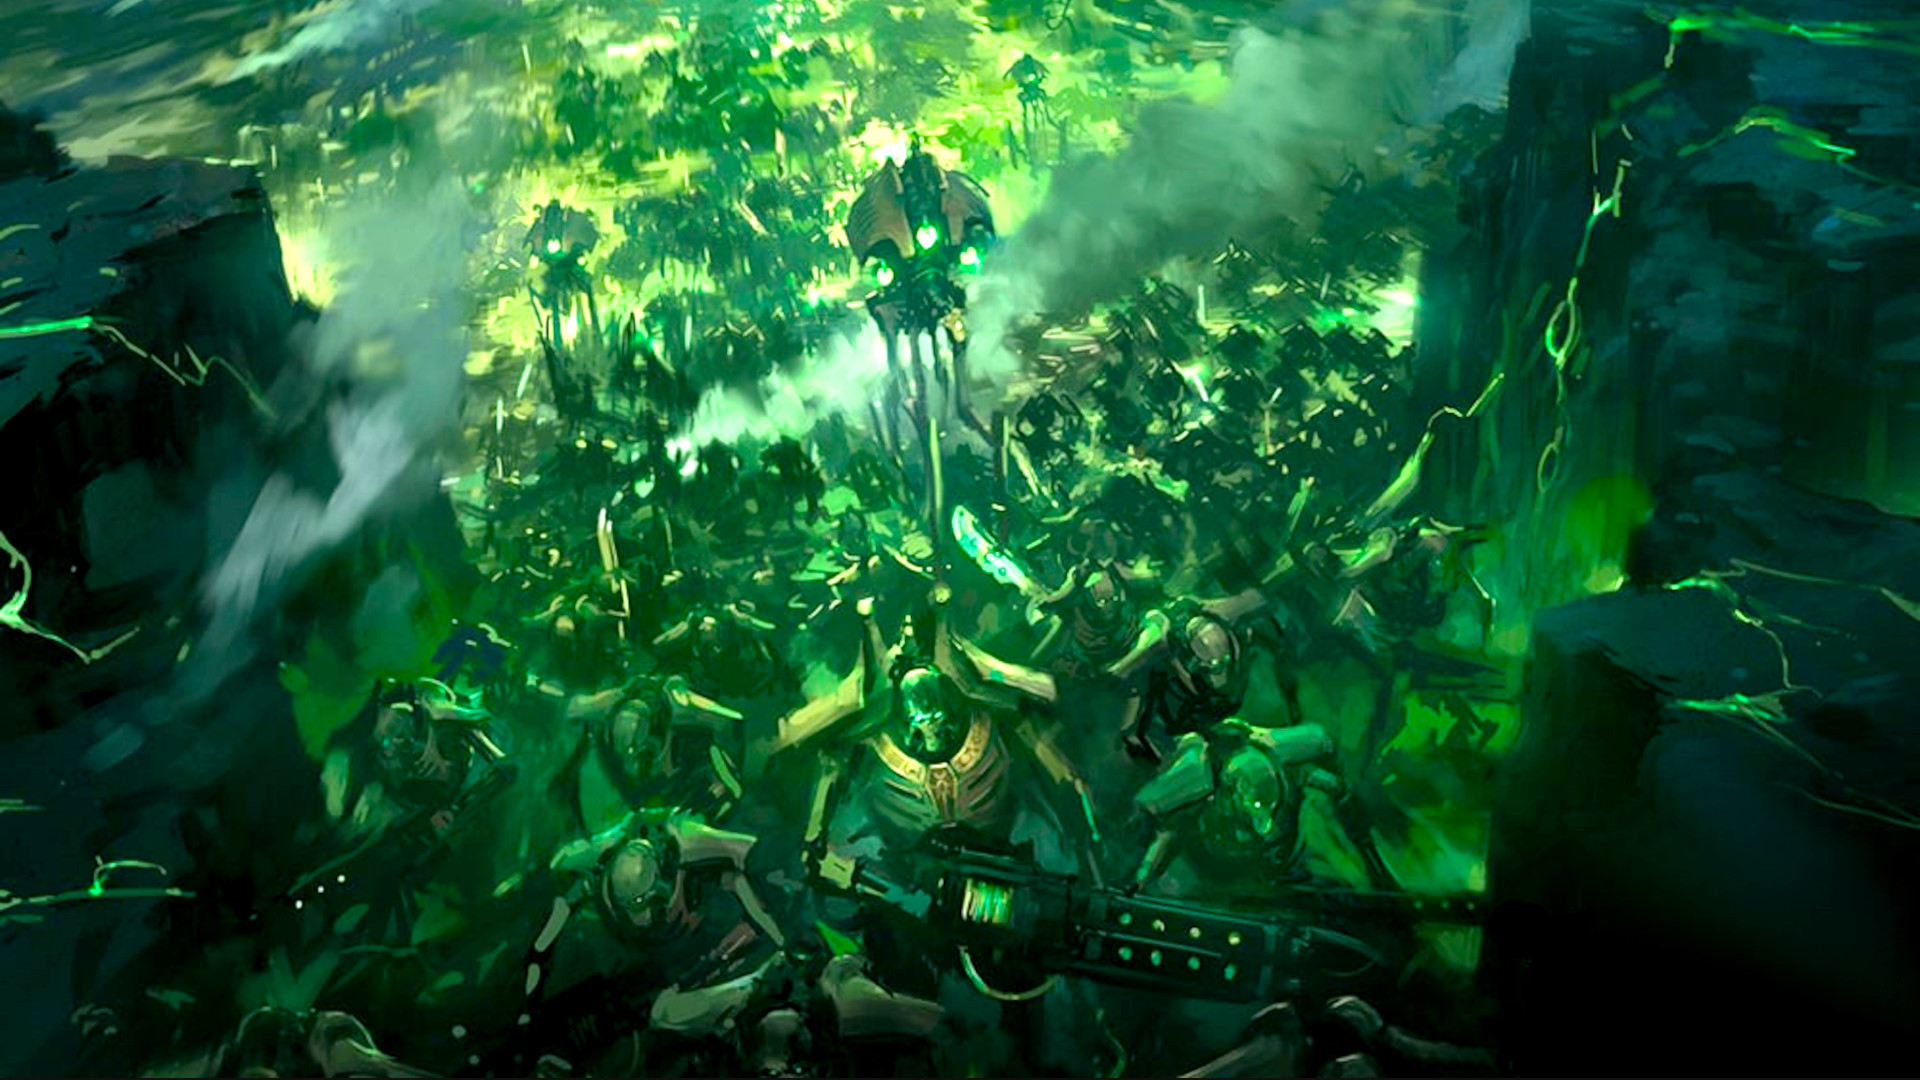 Warhammer 40,000 Faction Focus: Necrons - Warhammer Community